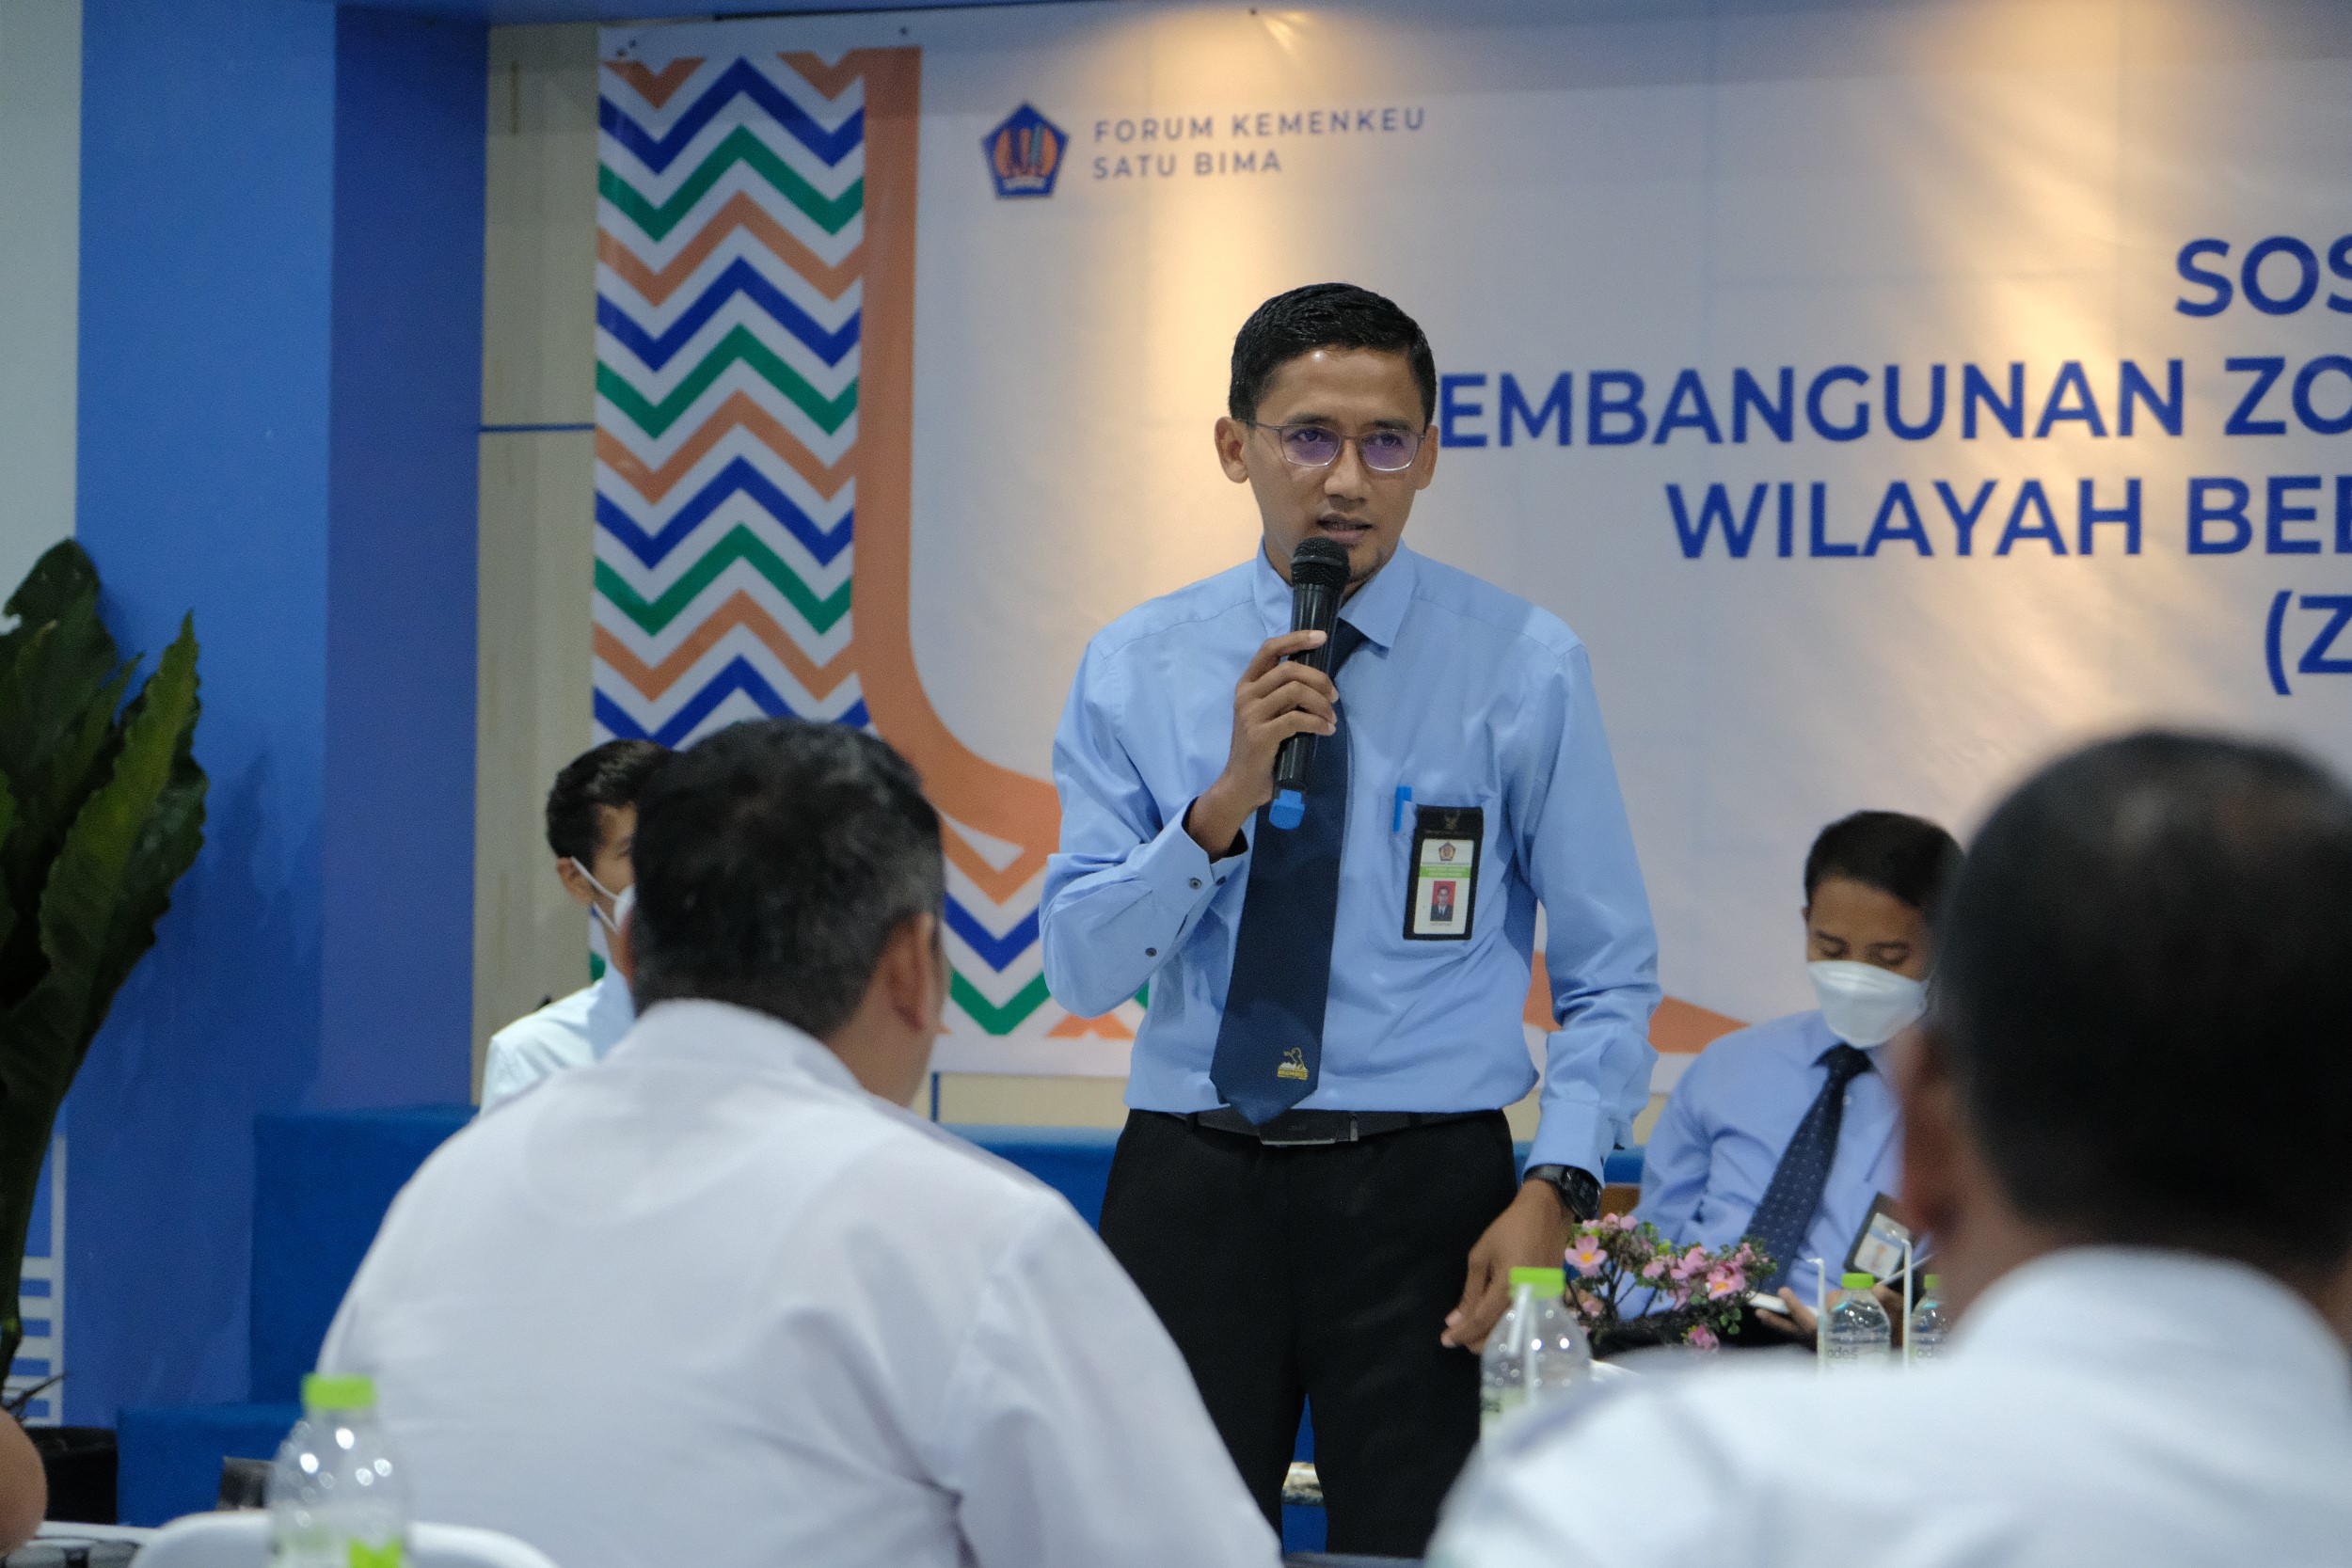 Bangun Island of Integrity, Forum Kemenkeu Satu Bima Sosialisasikan Pembangunan ZI-WBK 